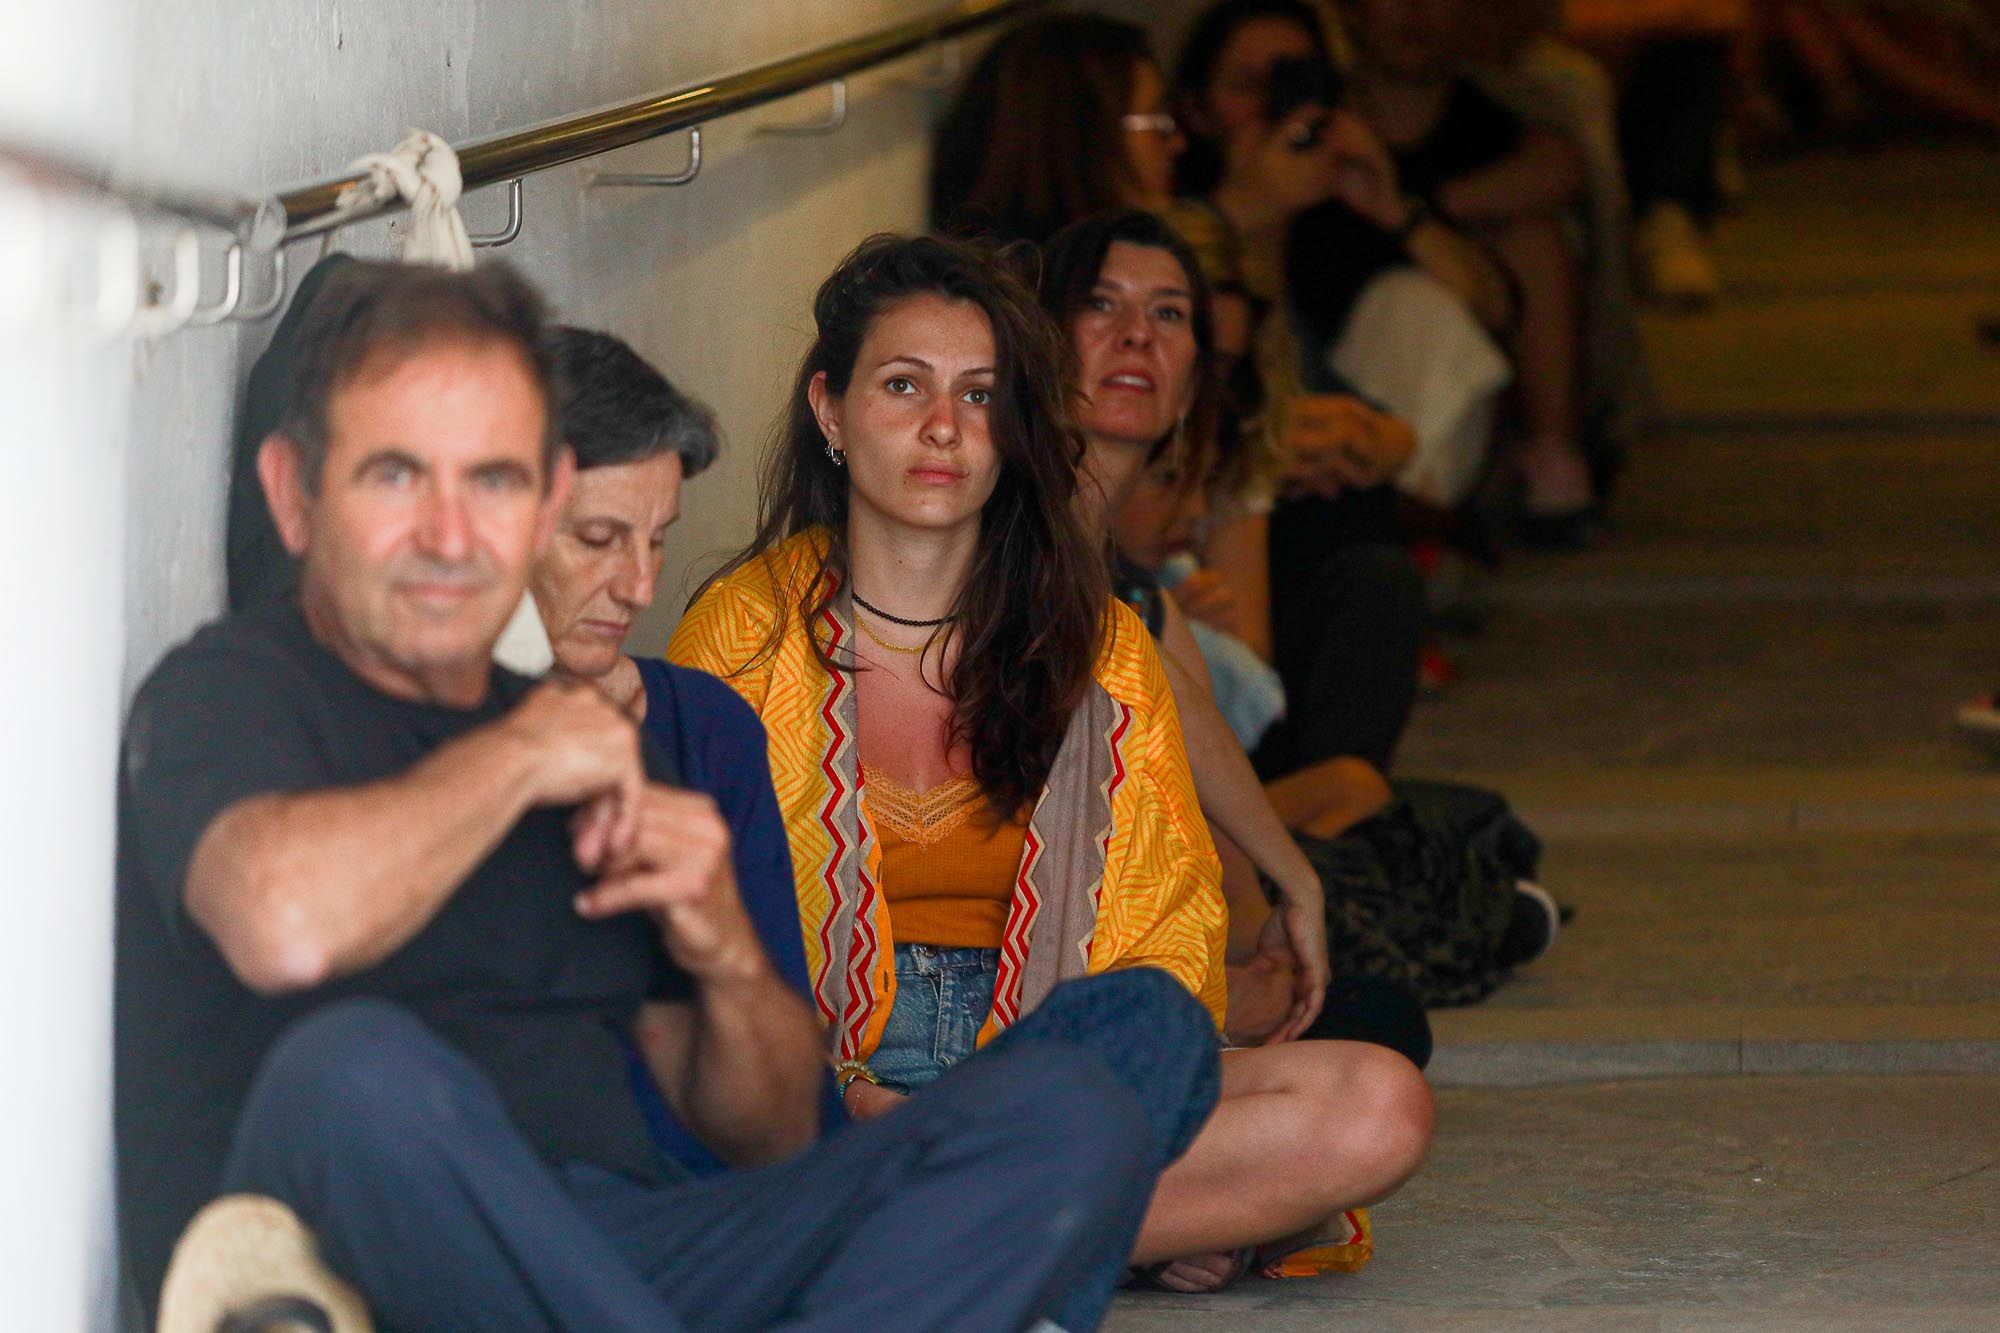 Concierto "experimento" de chelo en un túnel de Ibiza